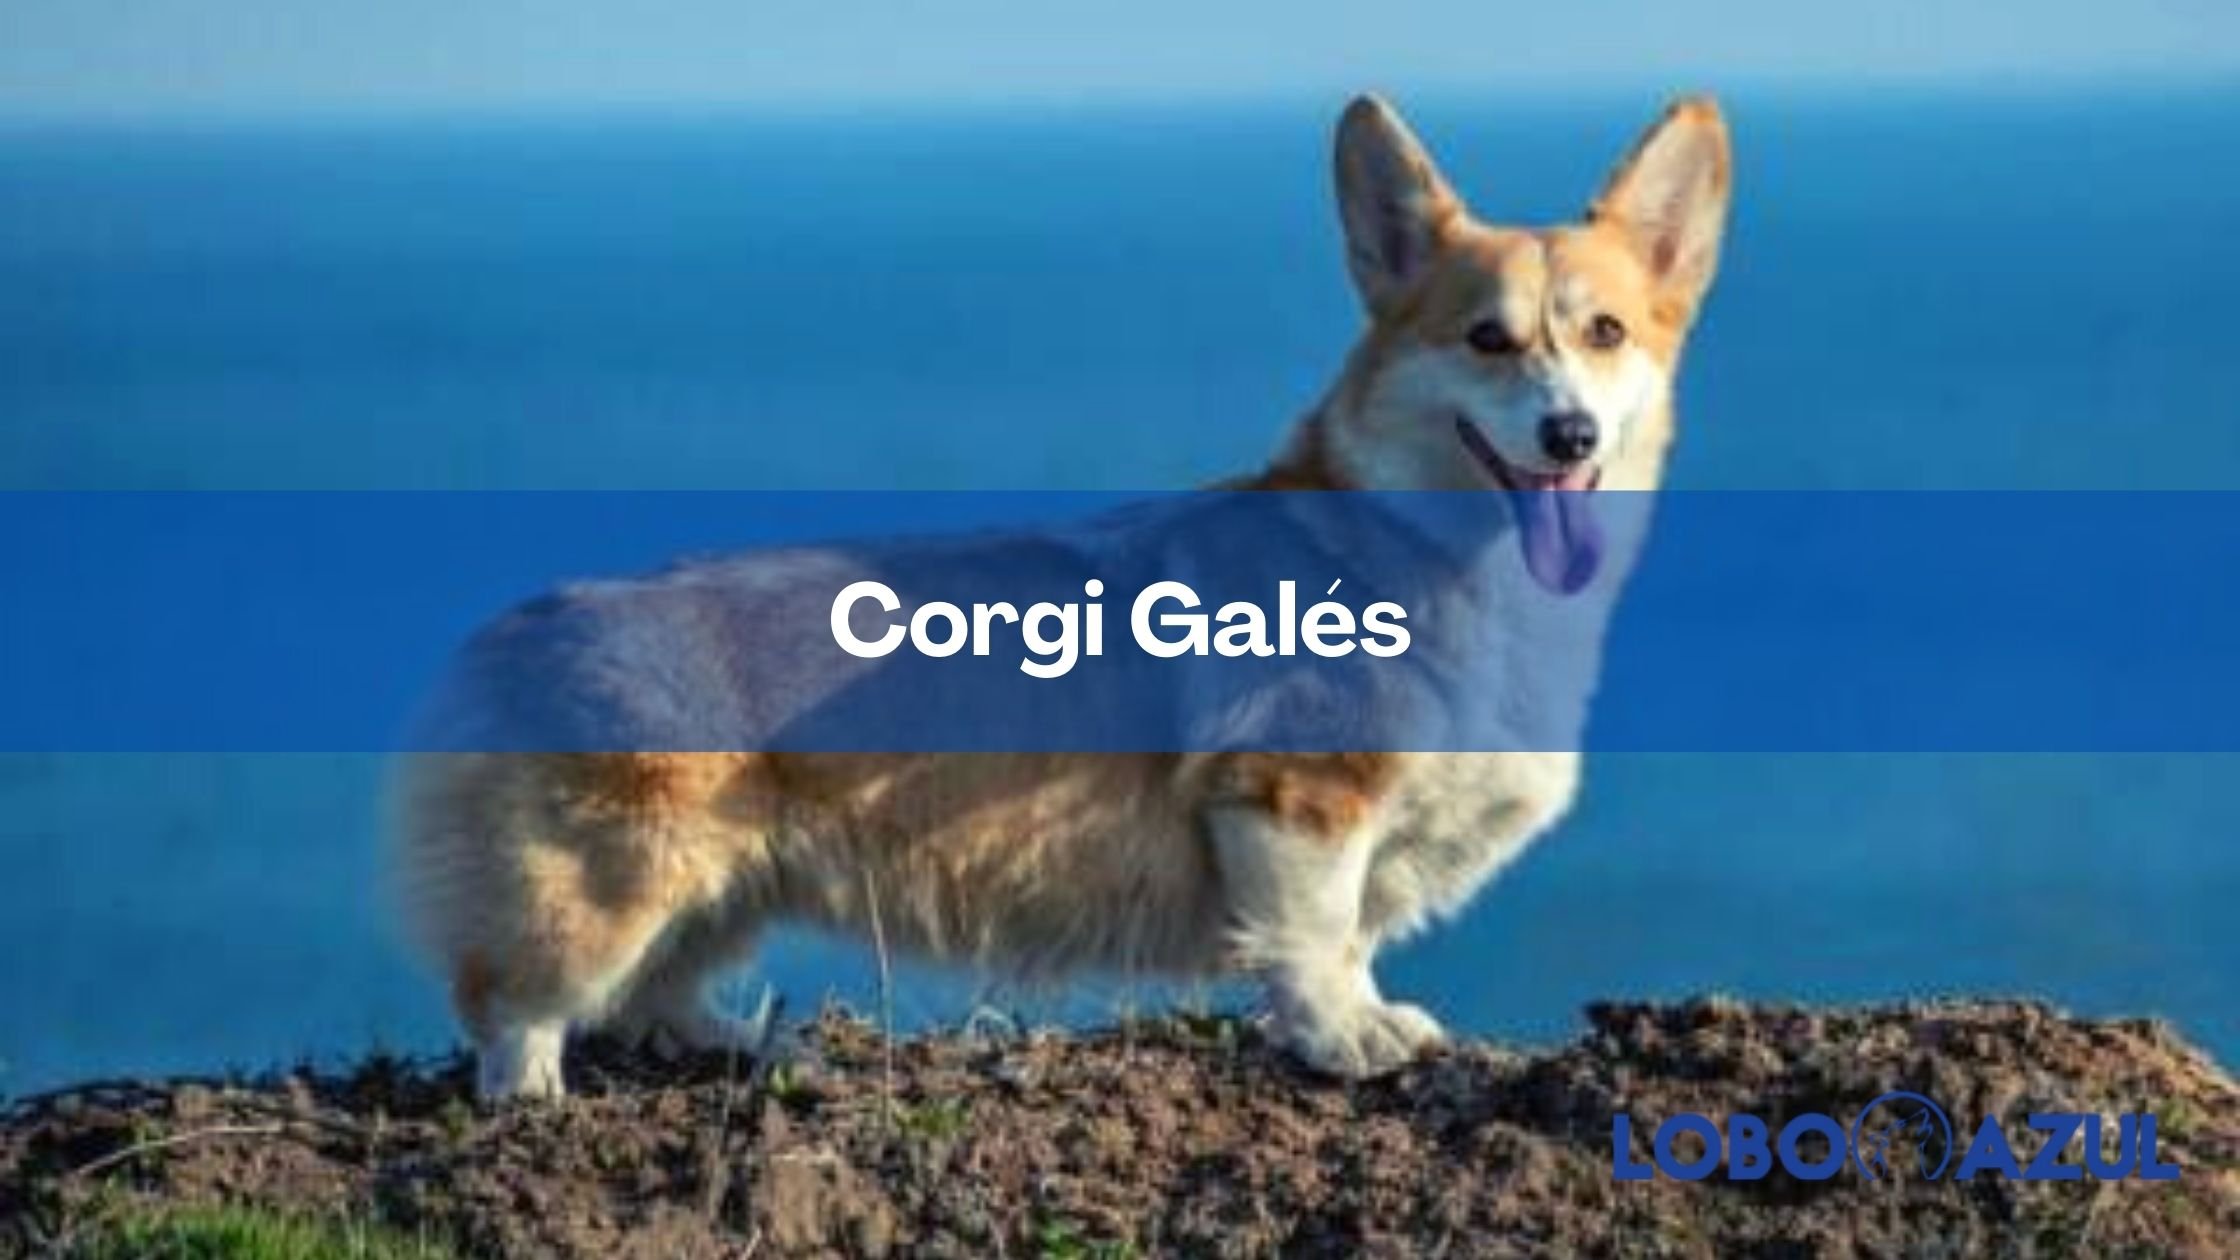 Corgi Galés: el preferido de la realeza